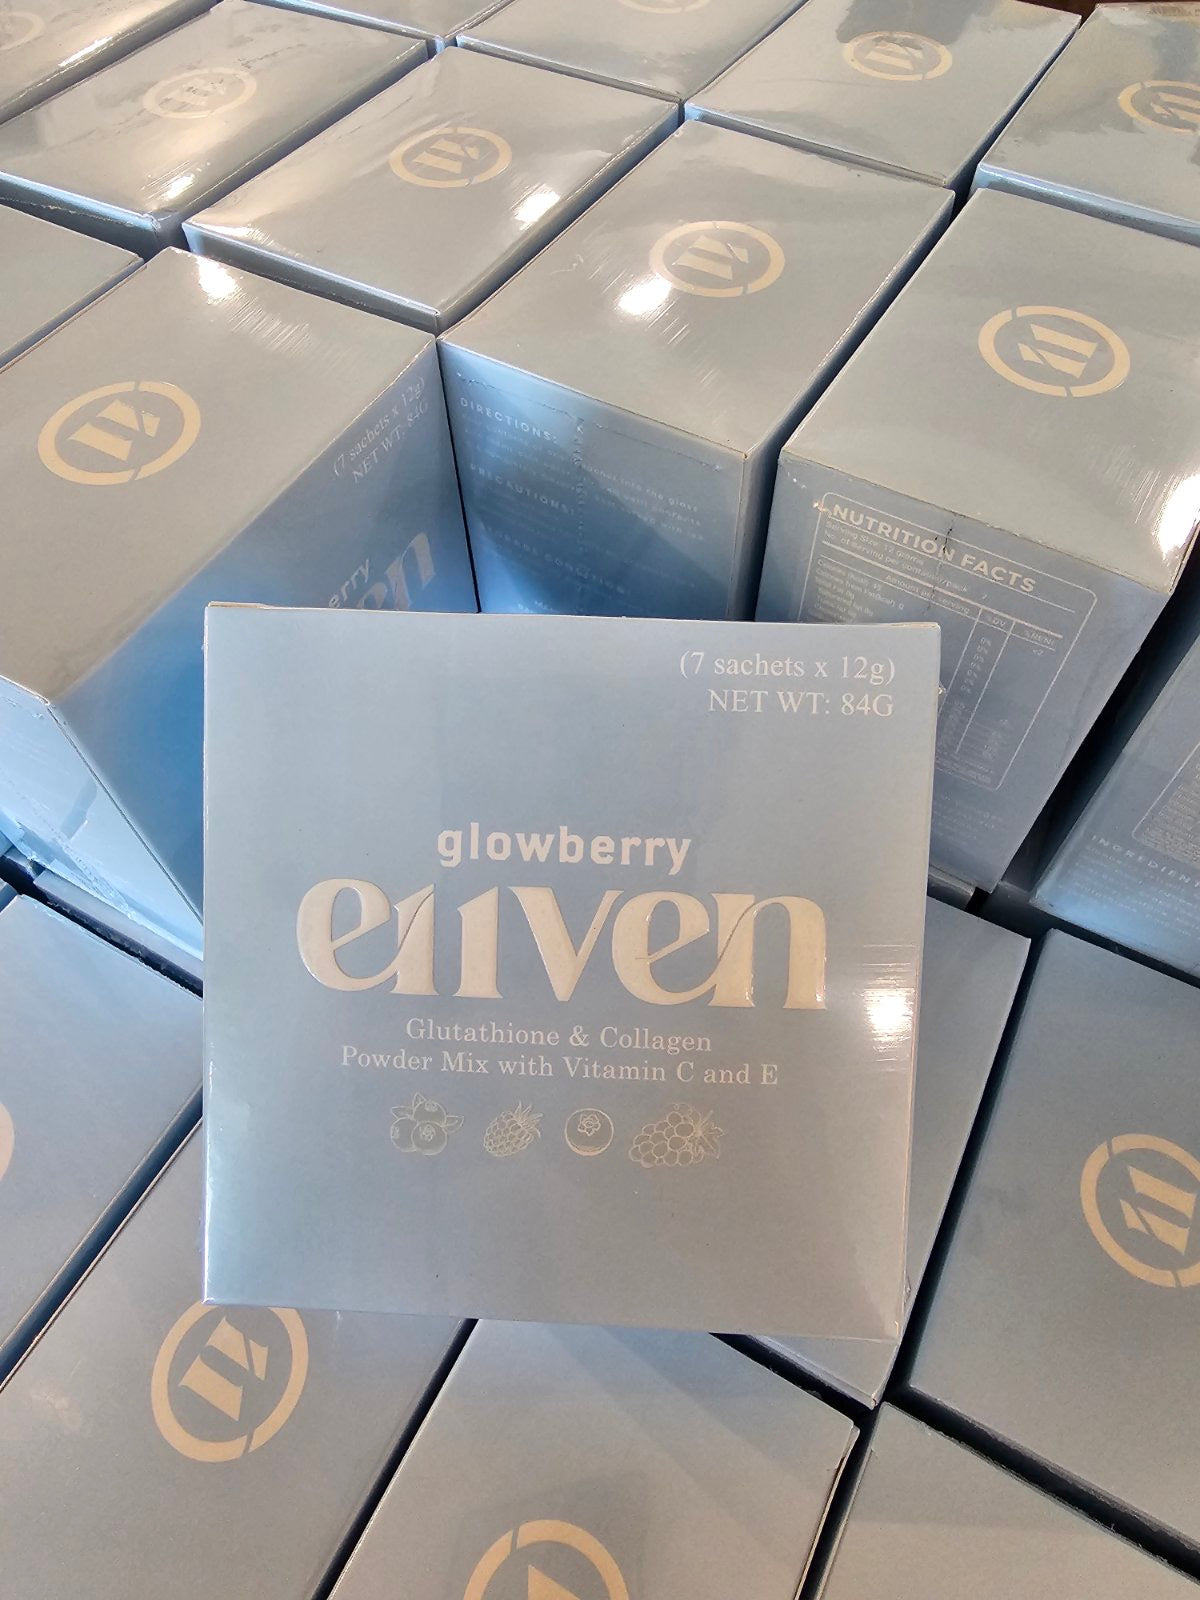 e11ven Glowberry Drink by Ellen Adarna